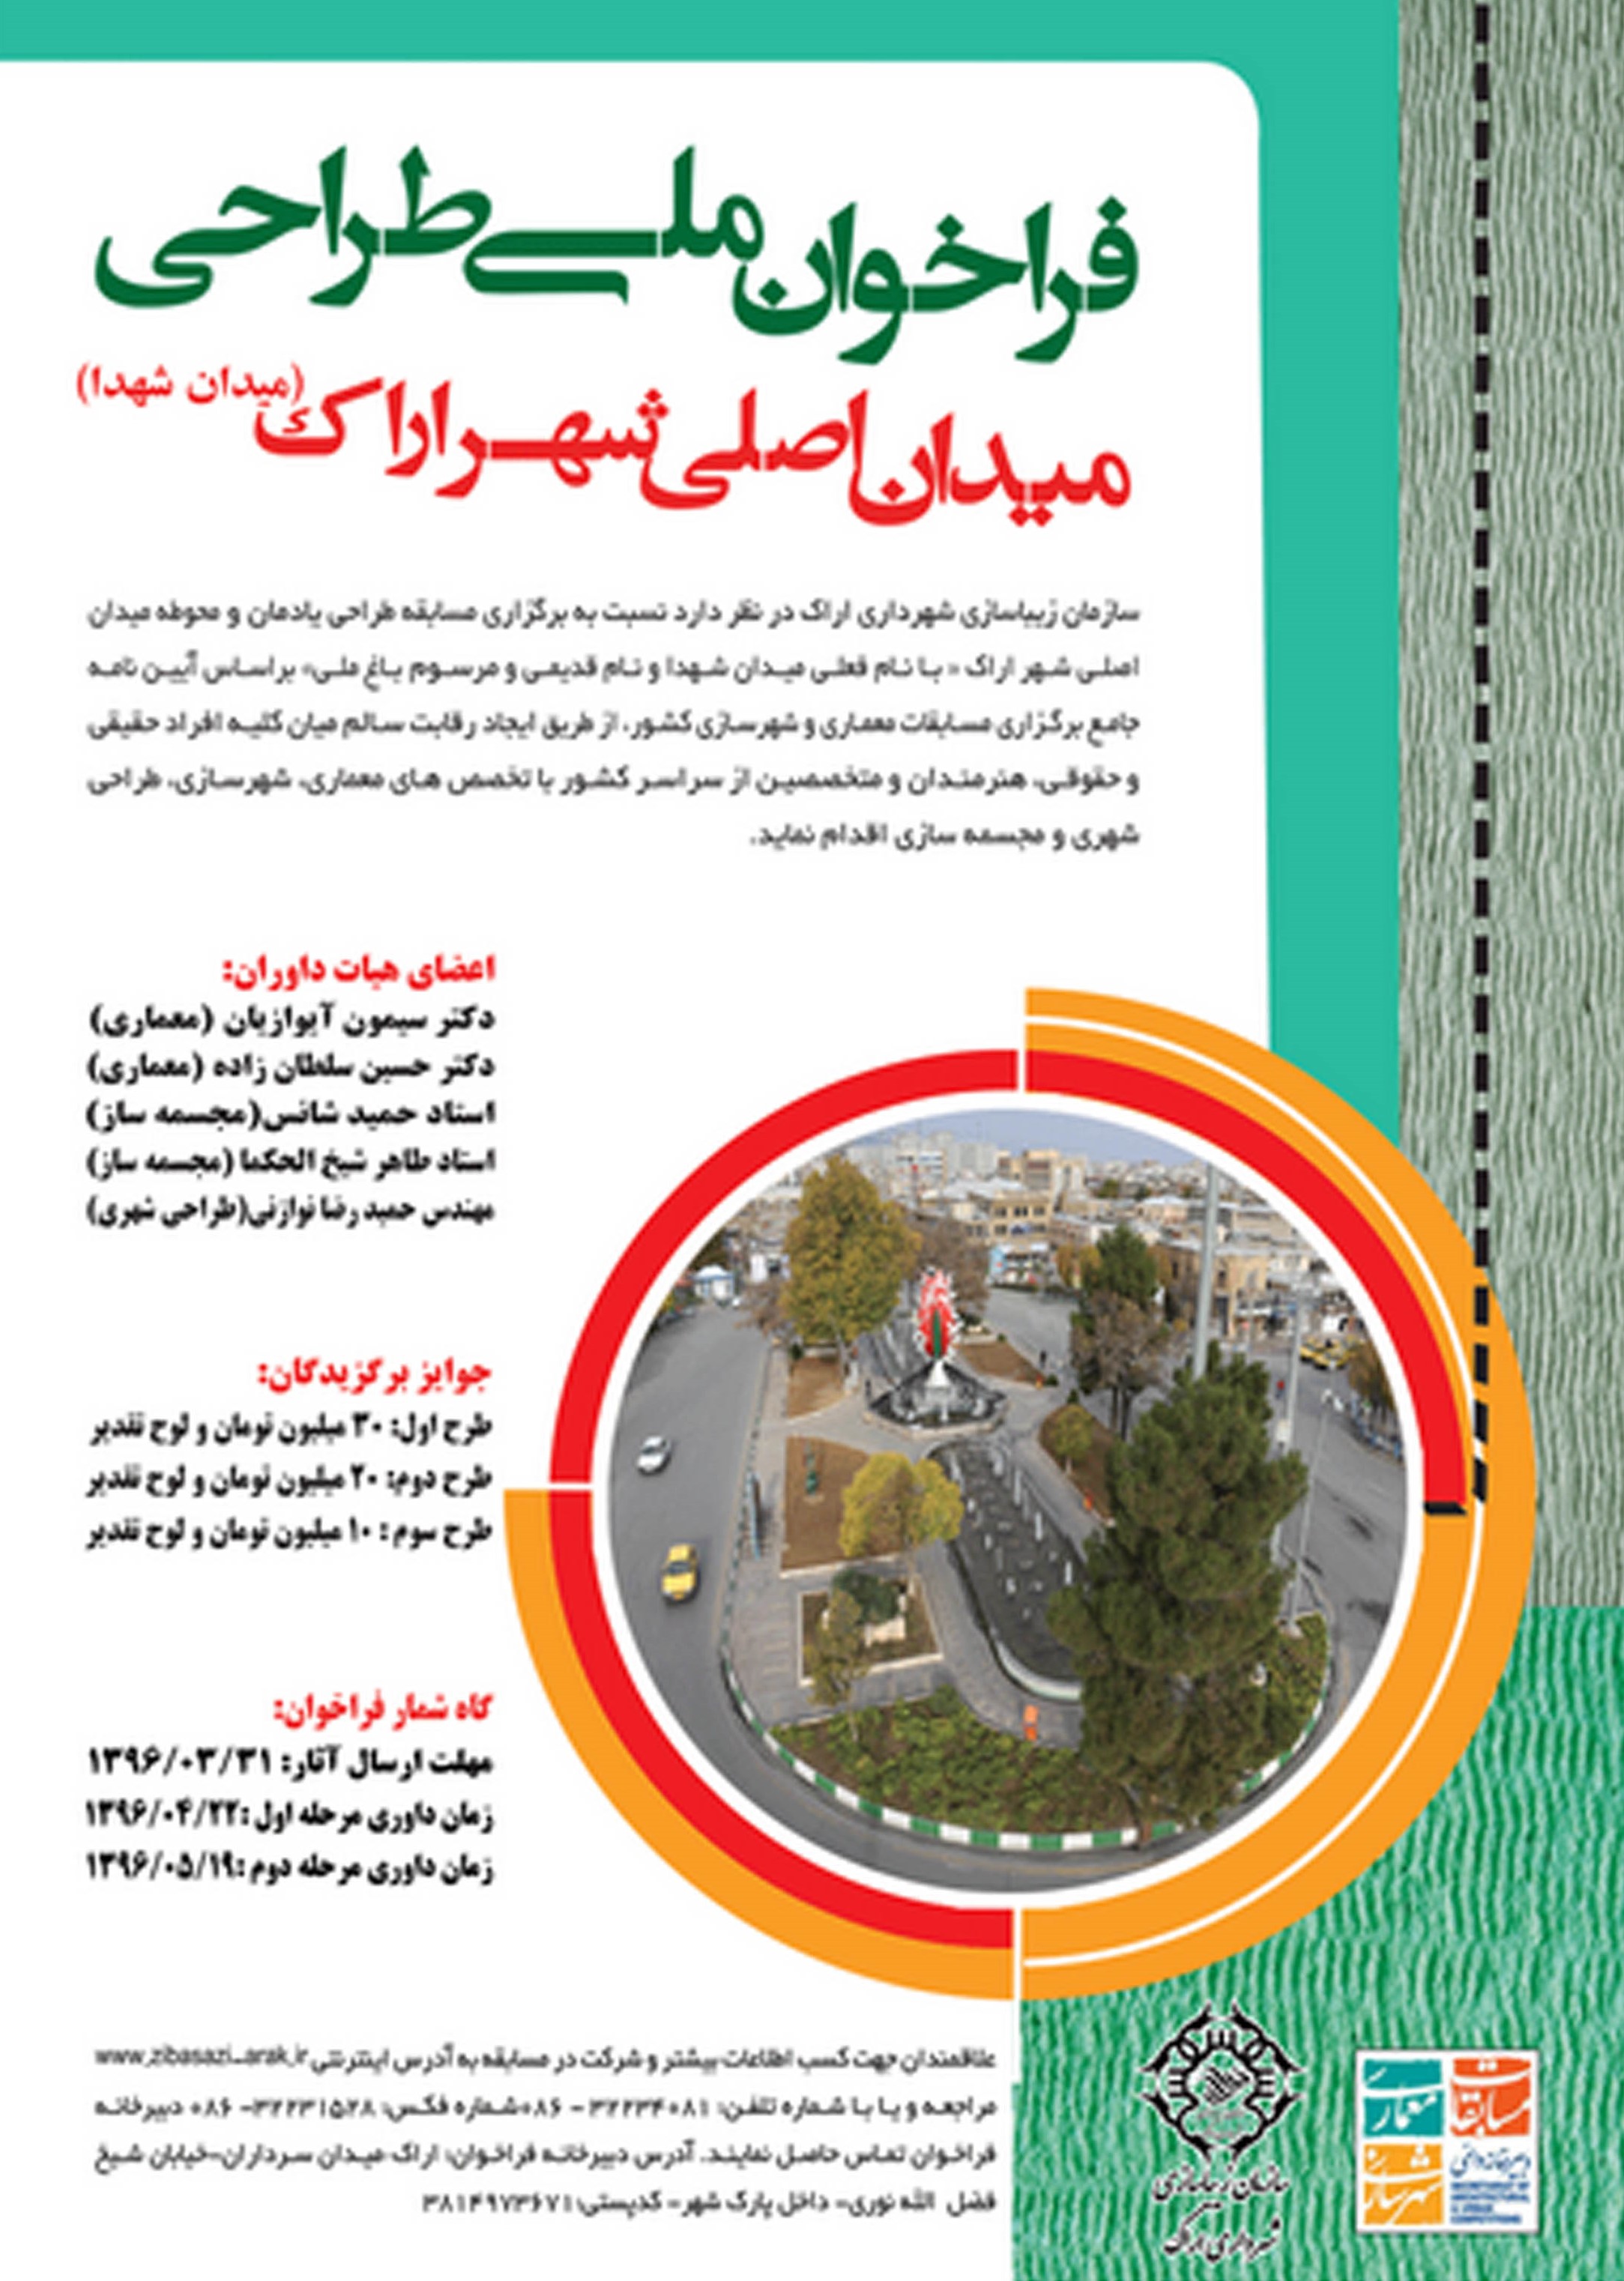 فراخوان ملی مسابقه طراحی یادمان و محوطه میدان اصلی شهر اراک«میدان شهدا»